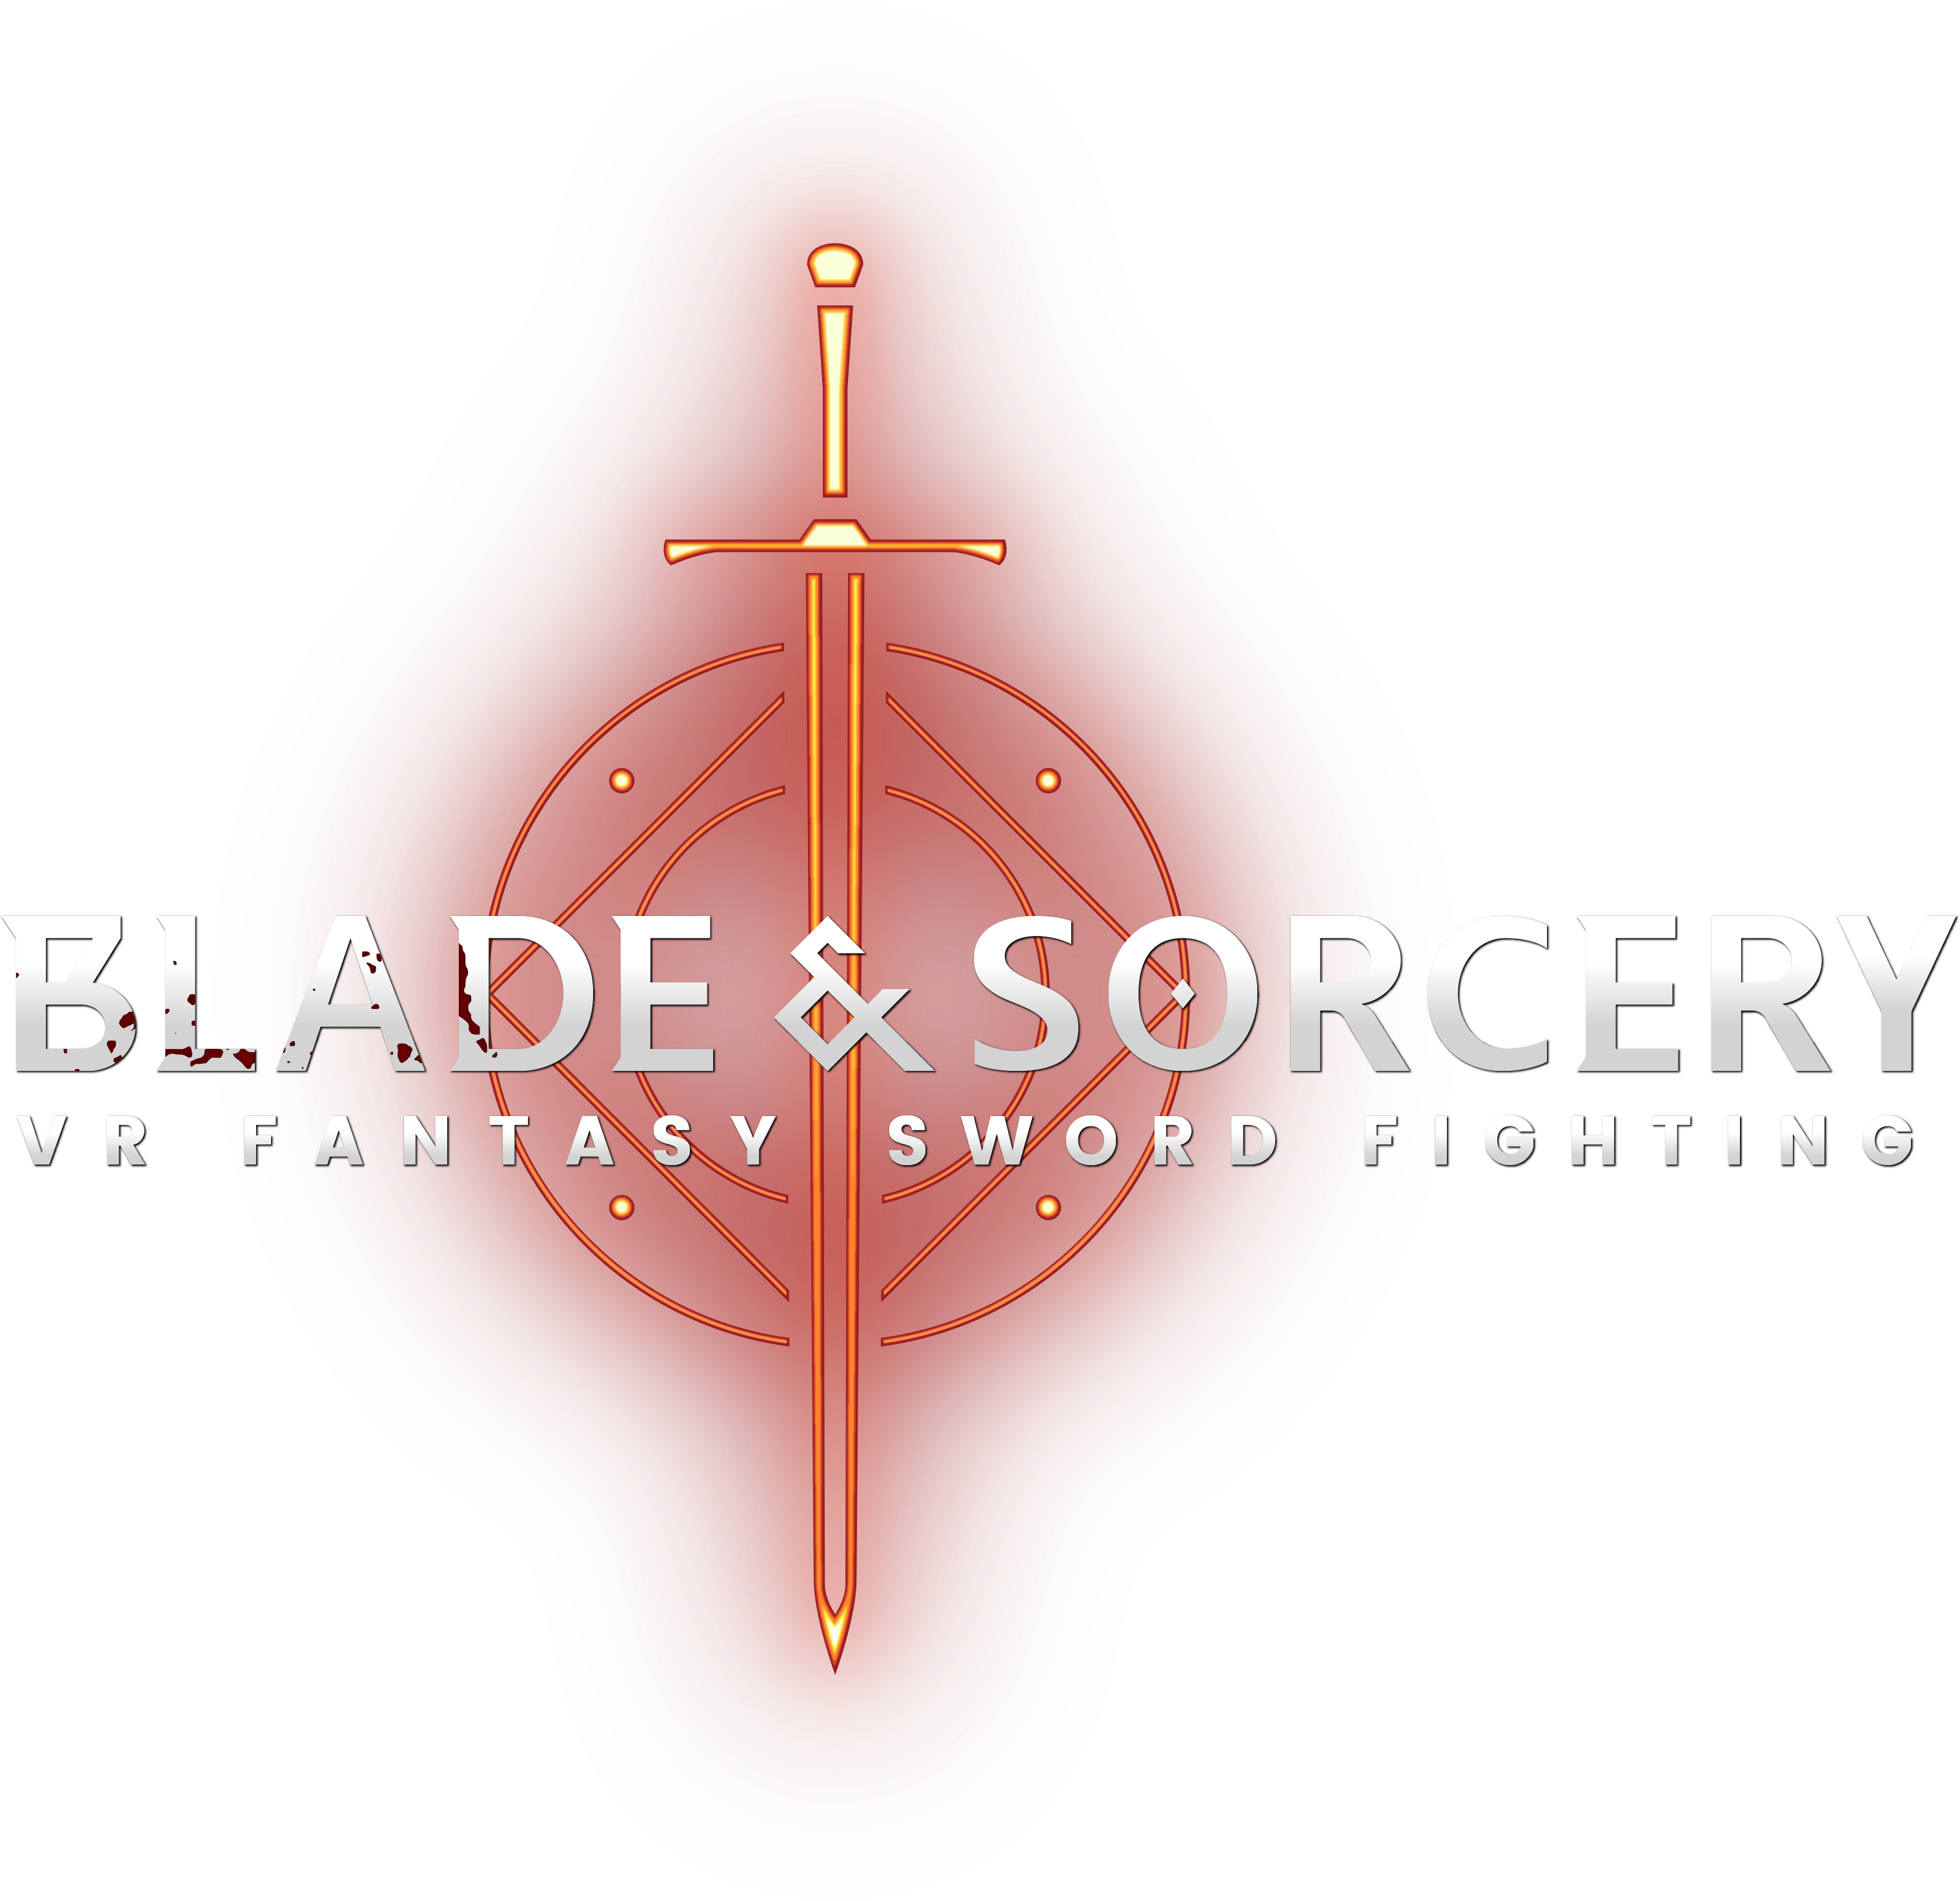 Blade and sorcery стим фото 23